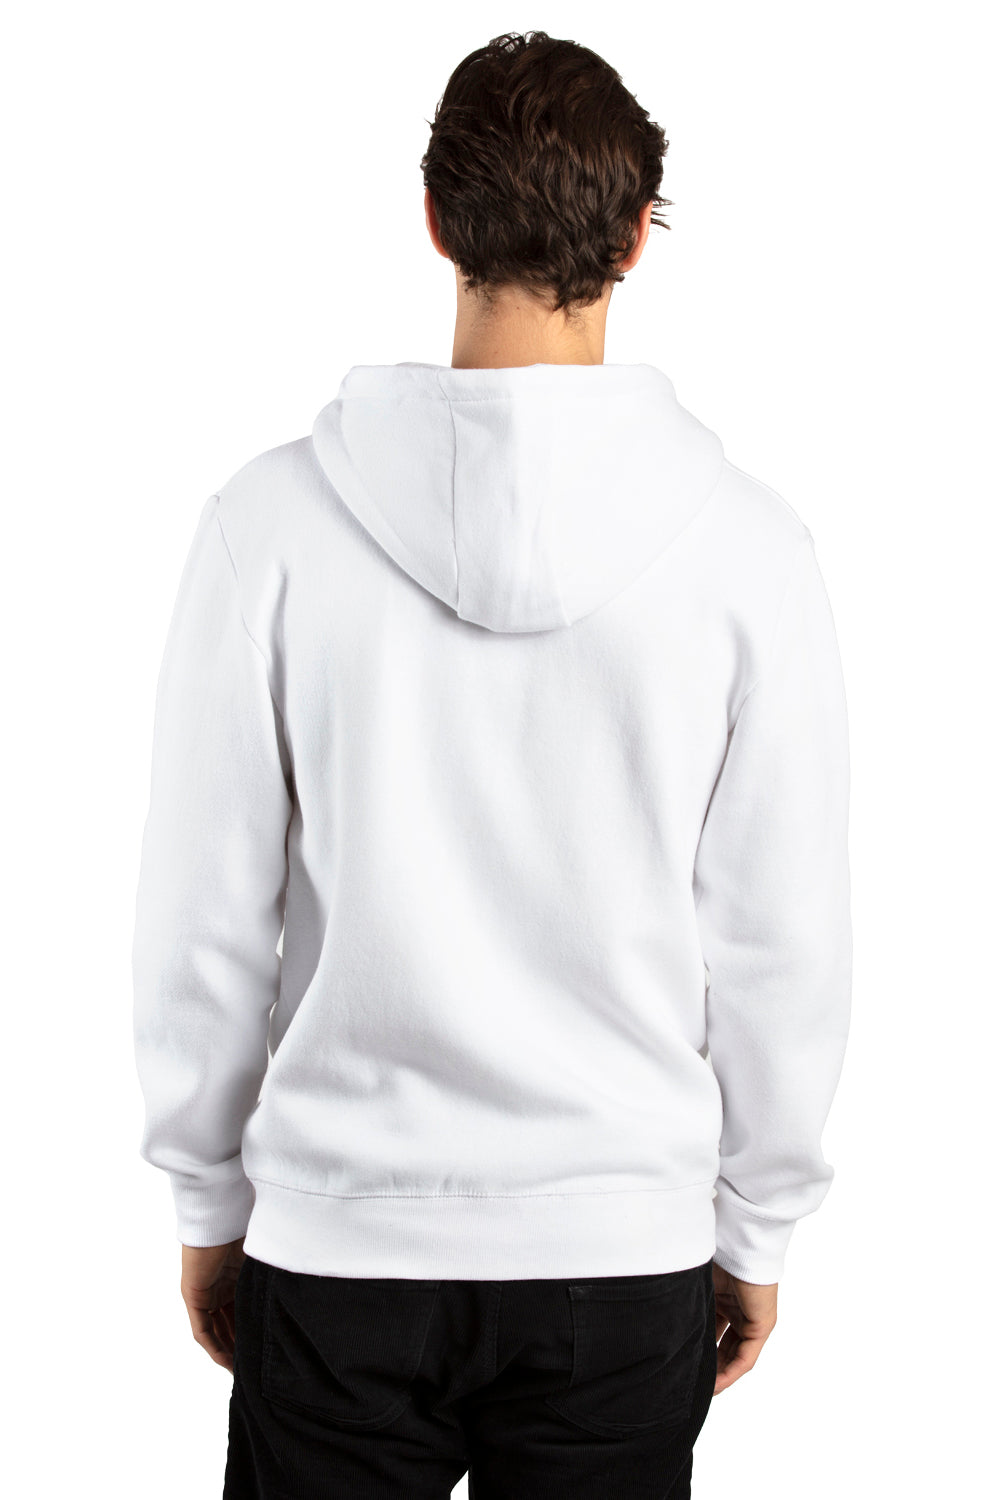 Threadfast Apparel 320Z Mens Ultimate Fleece Full Zip Hooded Sweatshirt Hoodie White Back